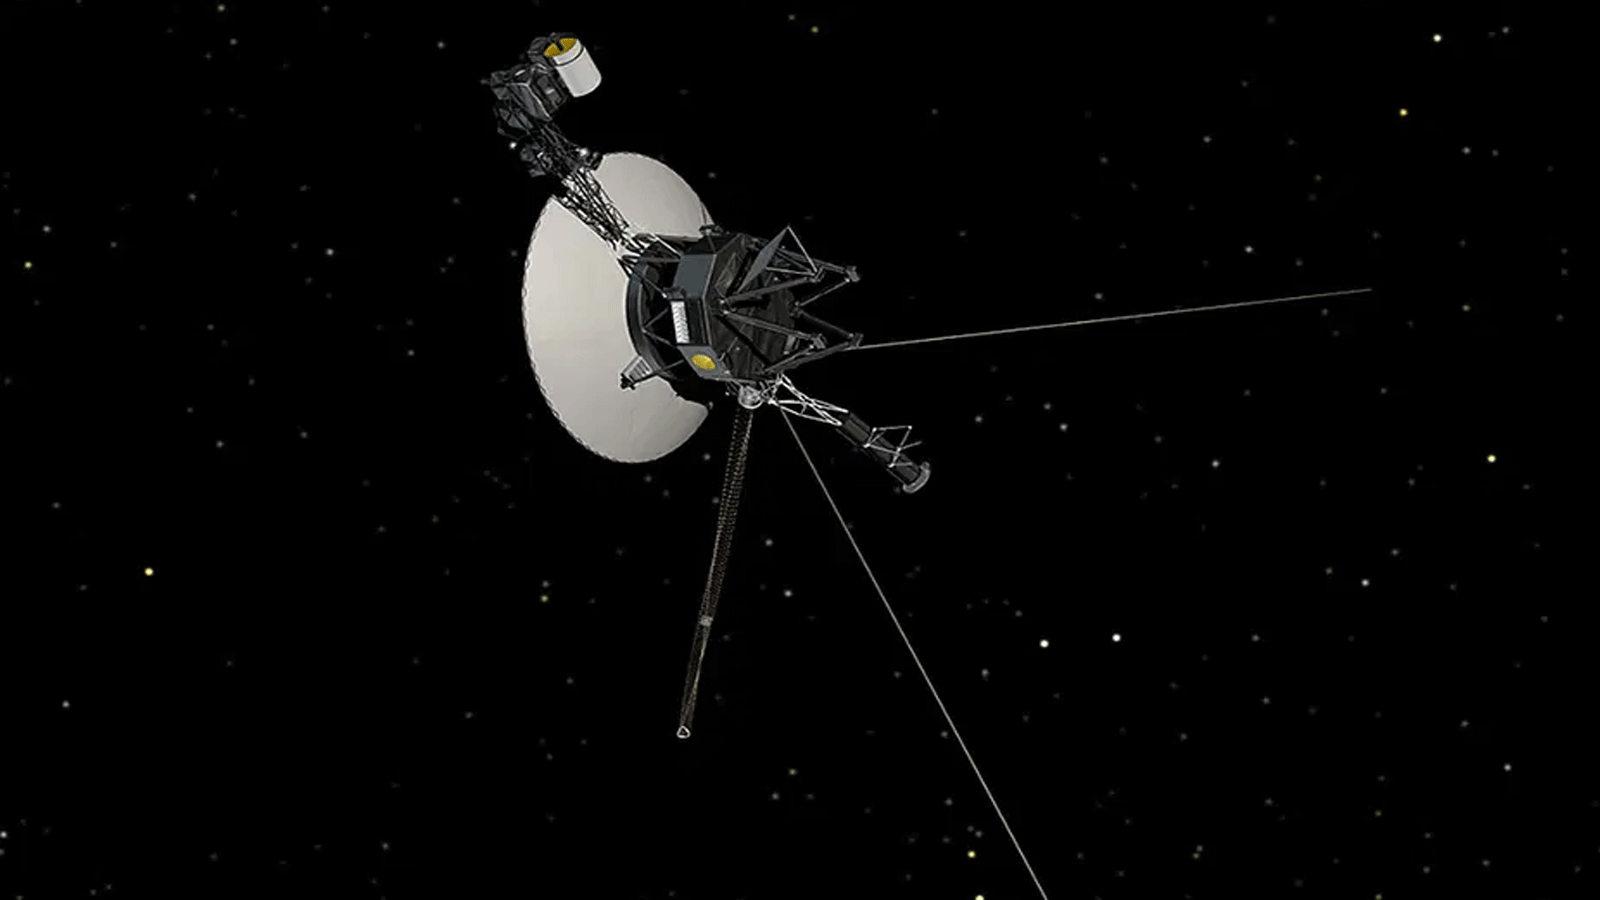 صورة تُظهر مركبة الفضاء فوييجر التابعة لناسا على خلفية من النجوم